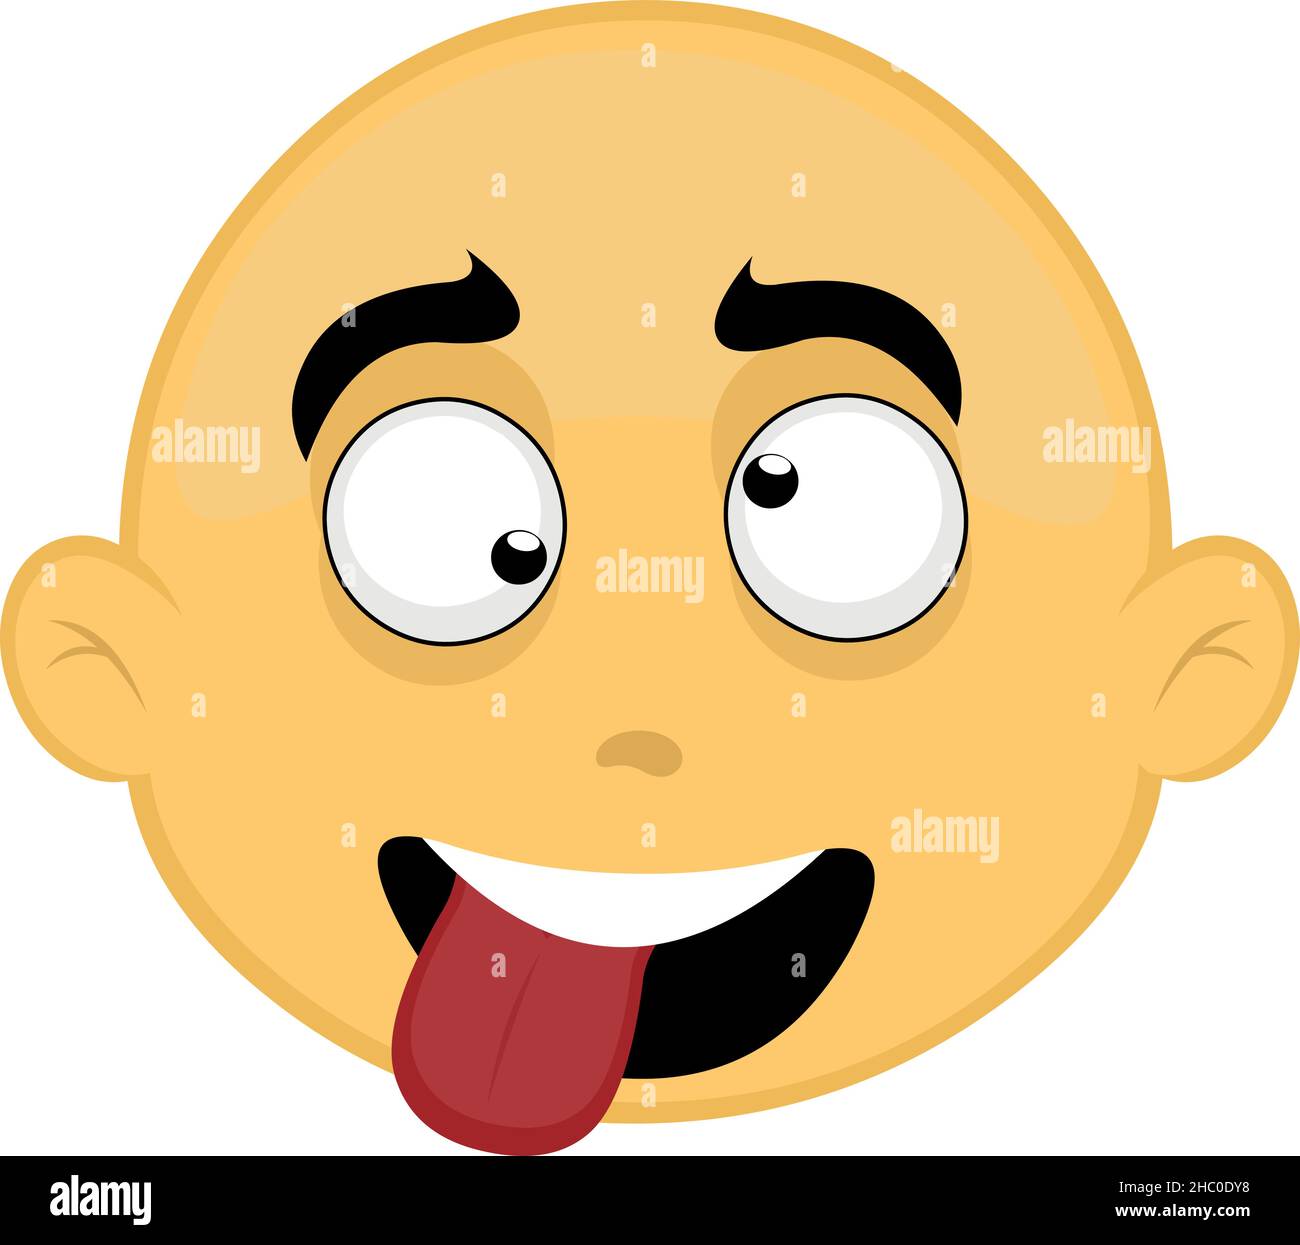 Vektor-Illustration des Gesichts einer gelben und kahlen Cartoon-Figur, mit einem verrückten Ausdruck Stock Vektor